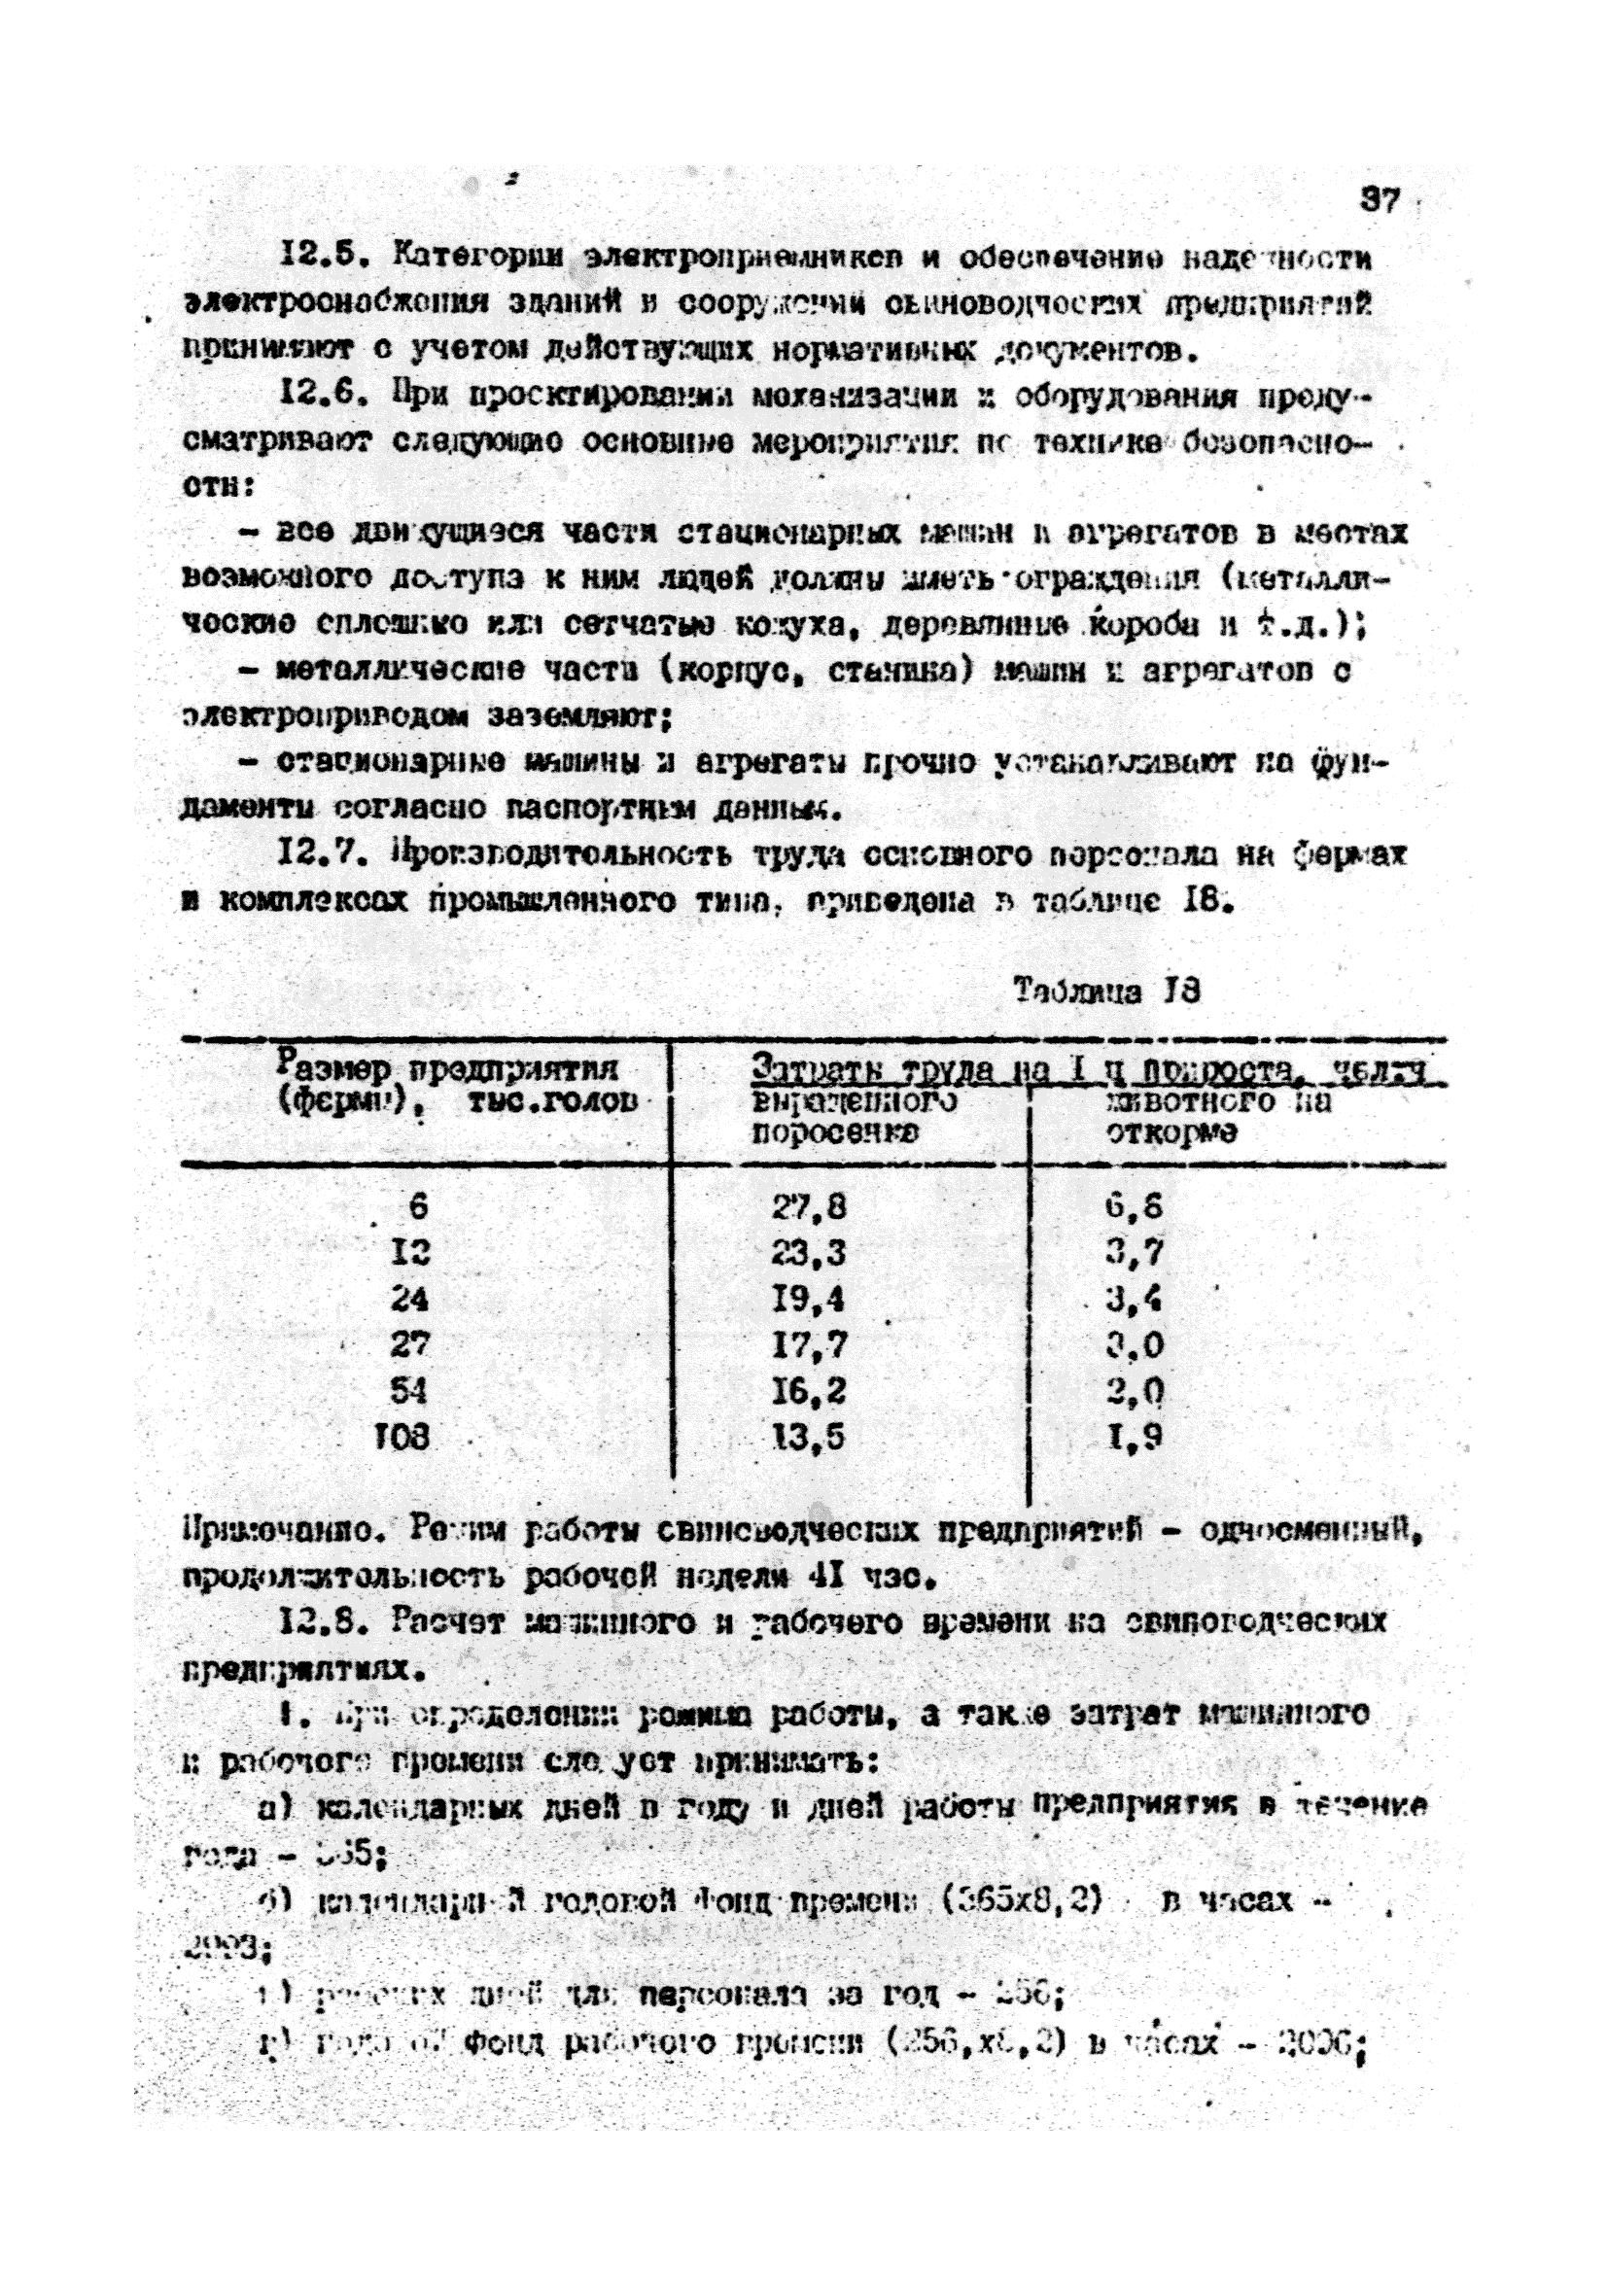 ОНТП 2-85/Госагропром СССР